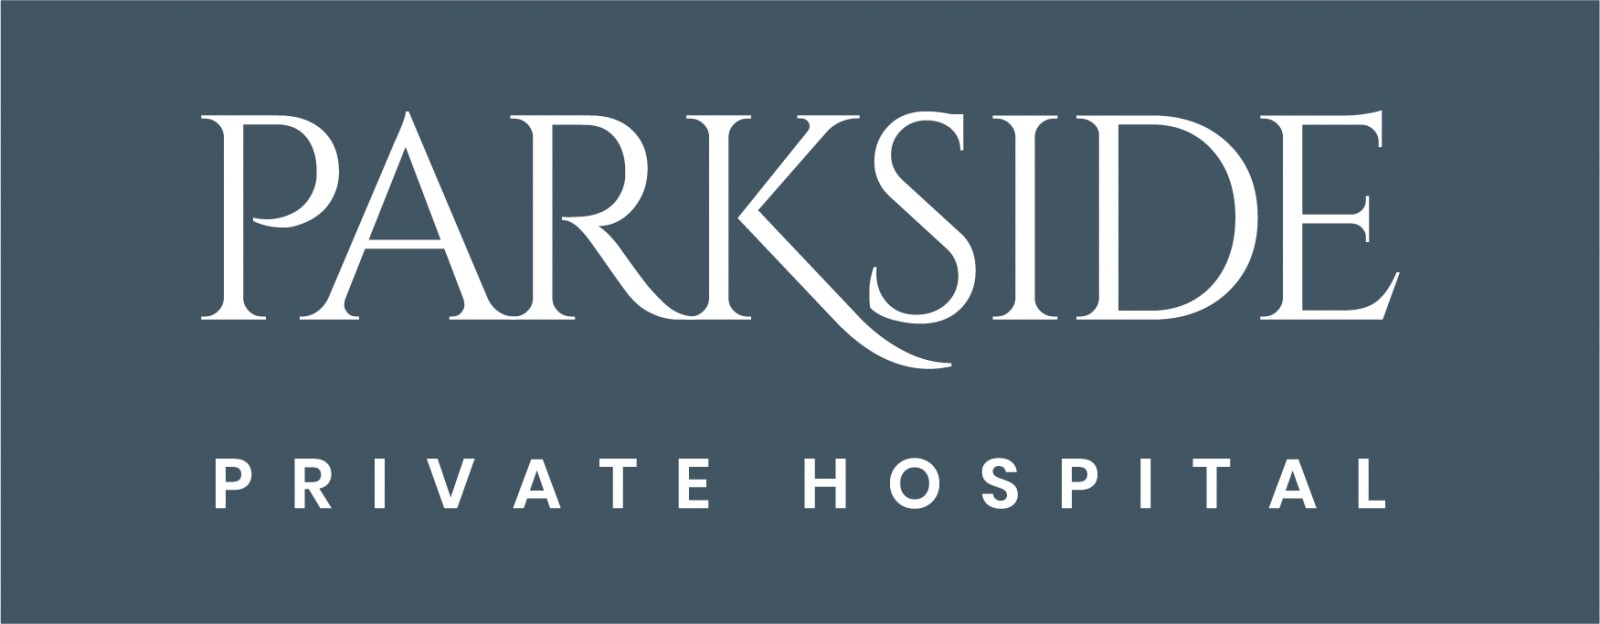 parkside private hospital logo